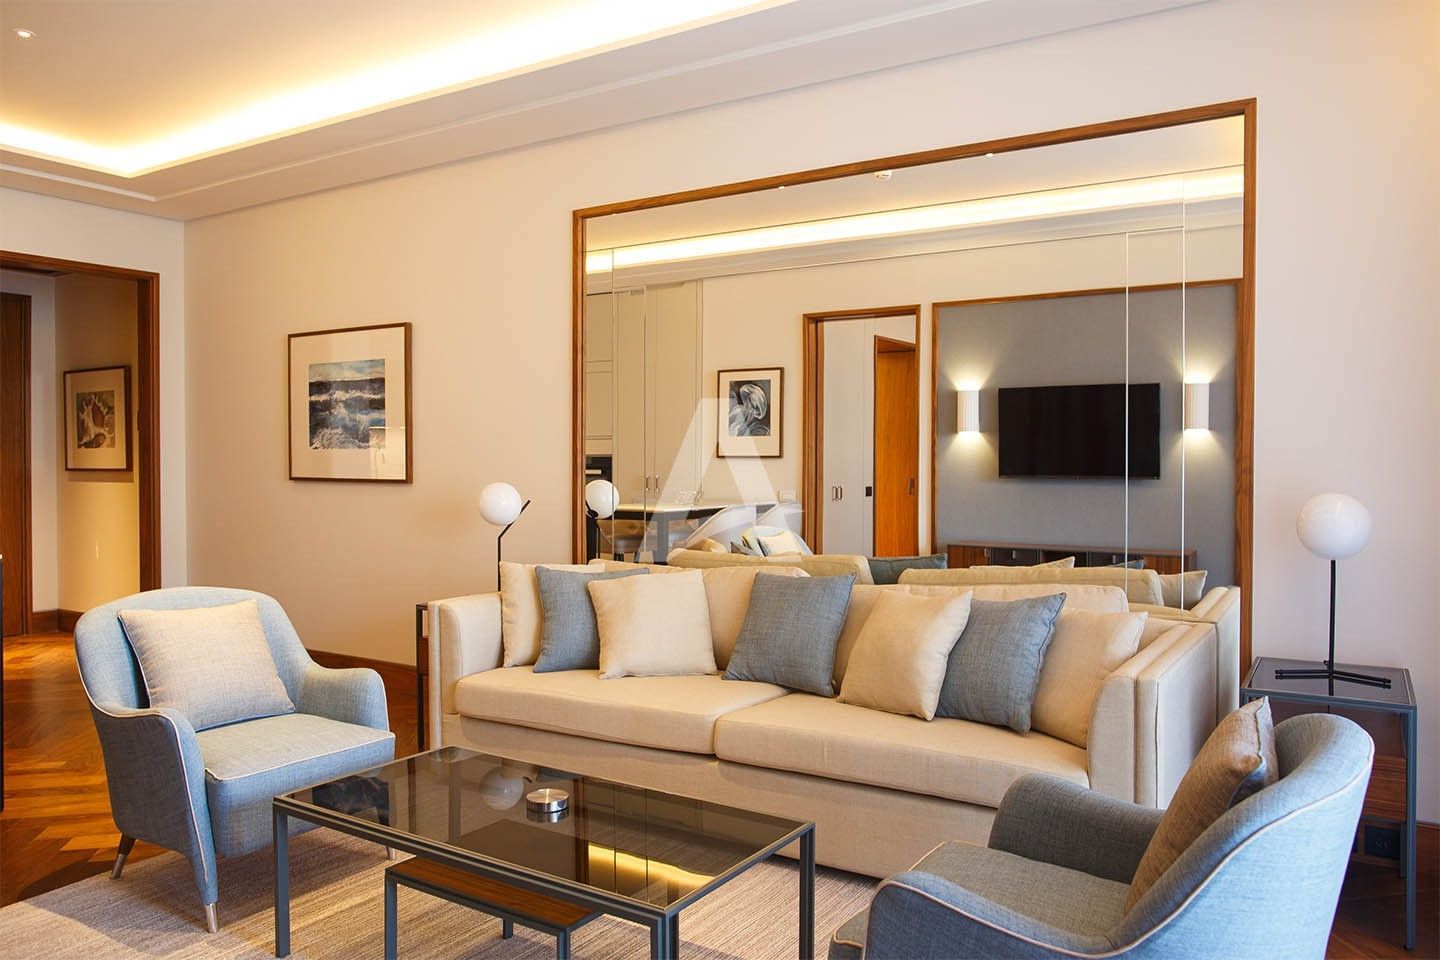 amforaproperty.com/Luksuzan jednosoban stan 76m2 u hotelu Regent , Porto montenegro (NA DUZI PERIOD)